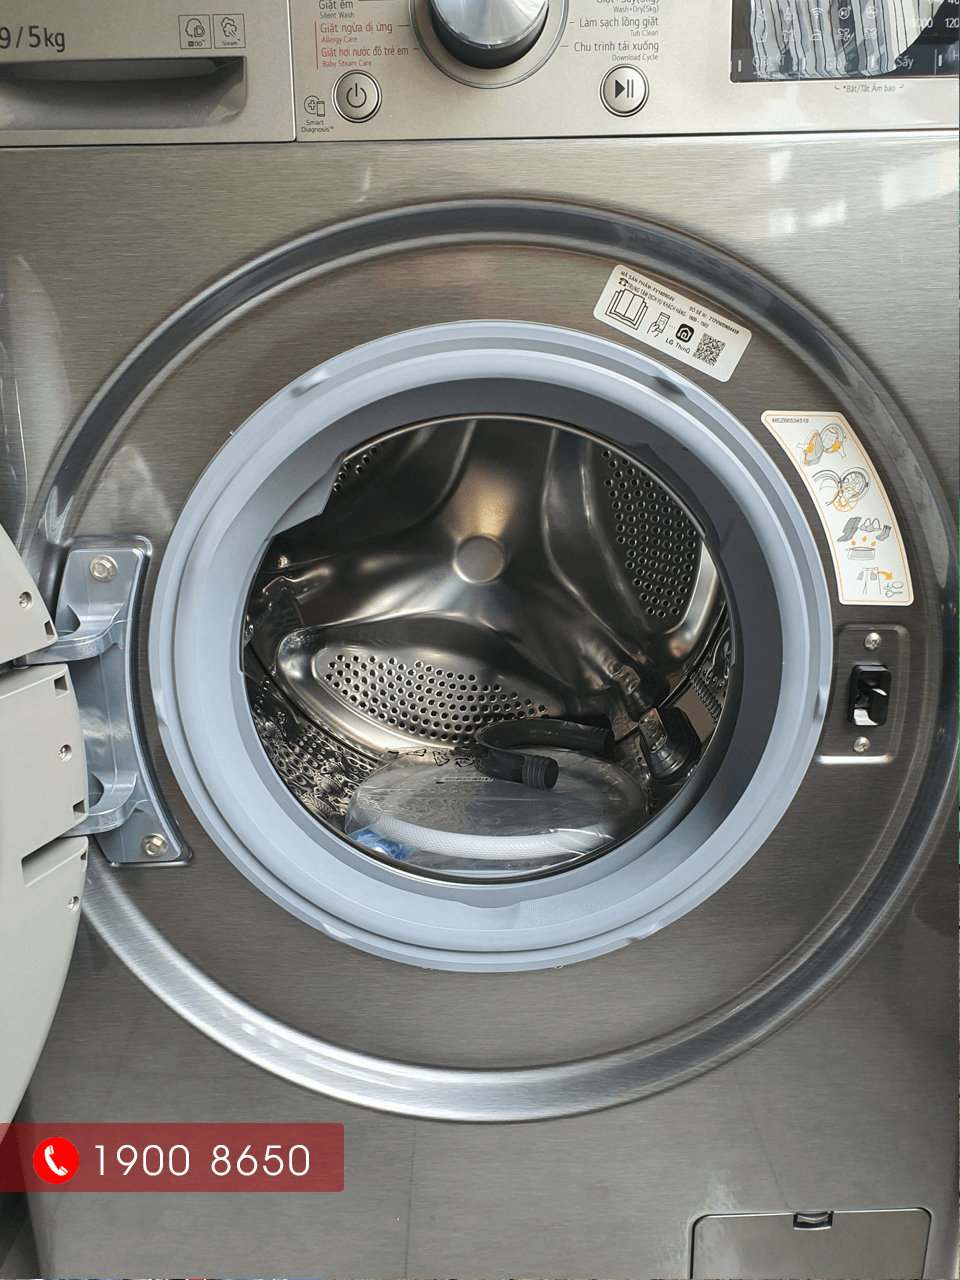 FV1409G4V sở hữu lồng giặt lớn nhưng được thiết kế nhỏ gọn, hiện đại, nhiều chương trình giặt